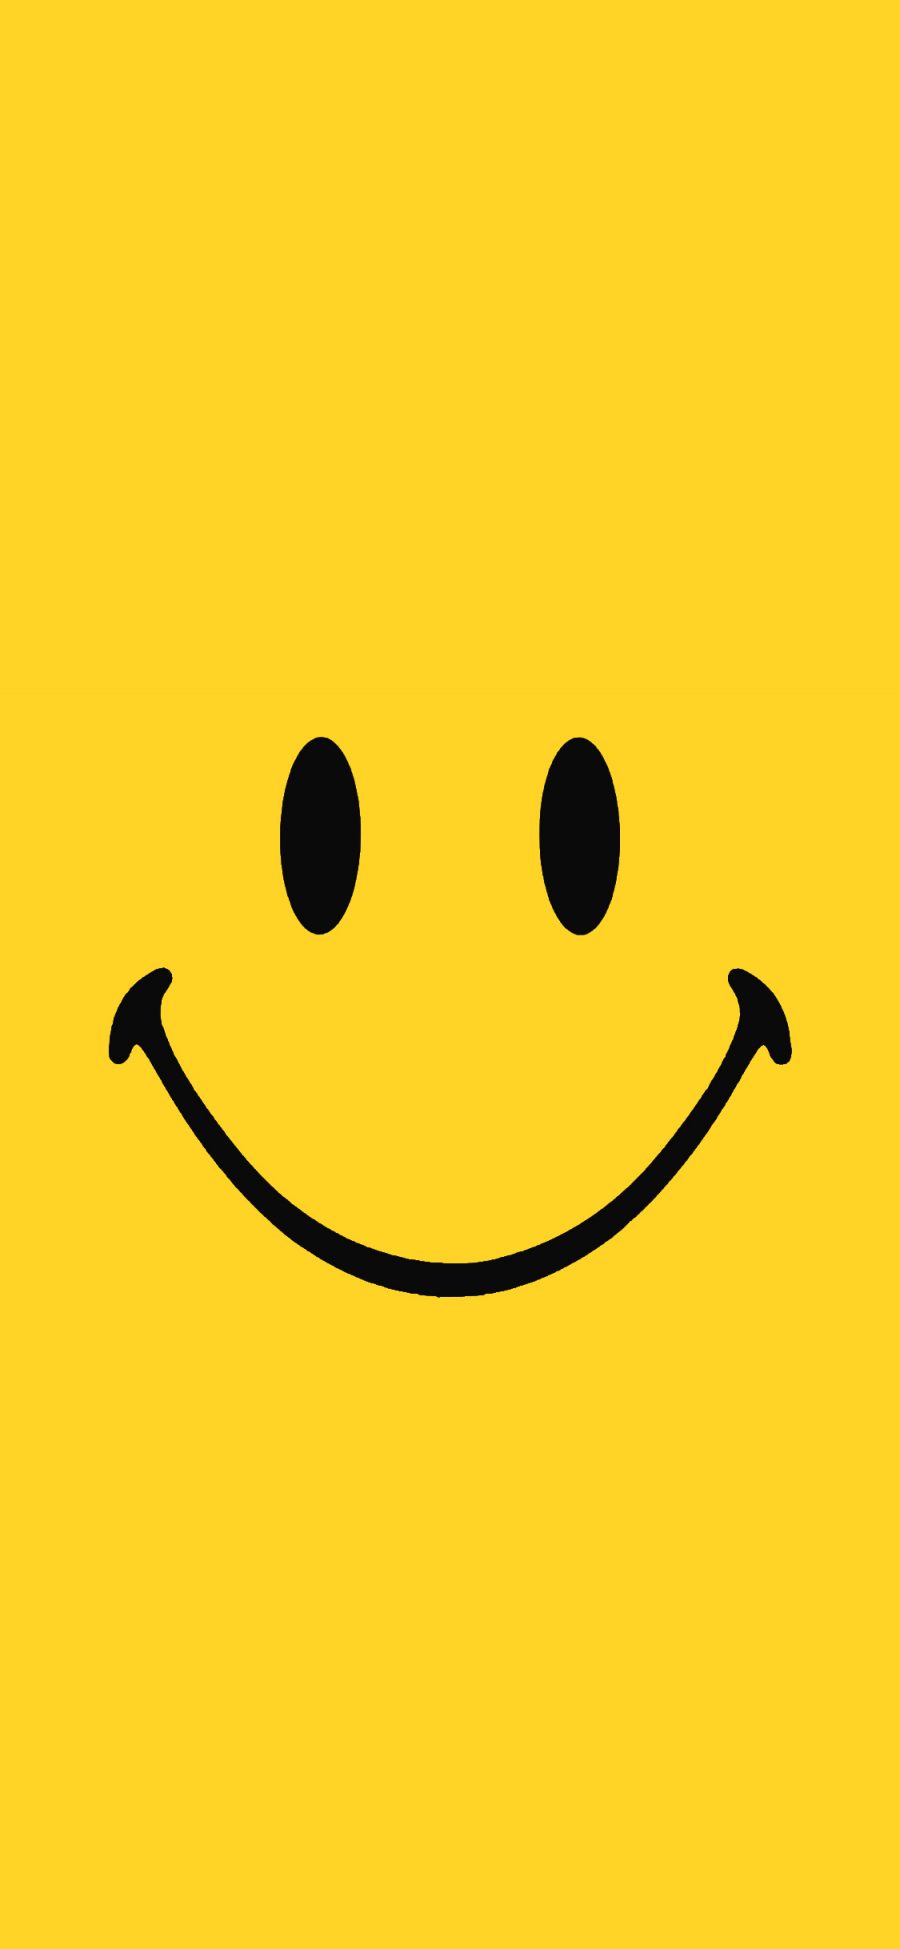 [2436×1125]笑脸 CHINATOWN MARKET 黄色 表情 品牌 苹果手机动漫壁纸图片